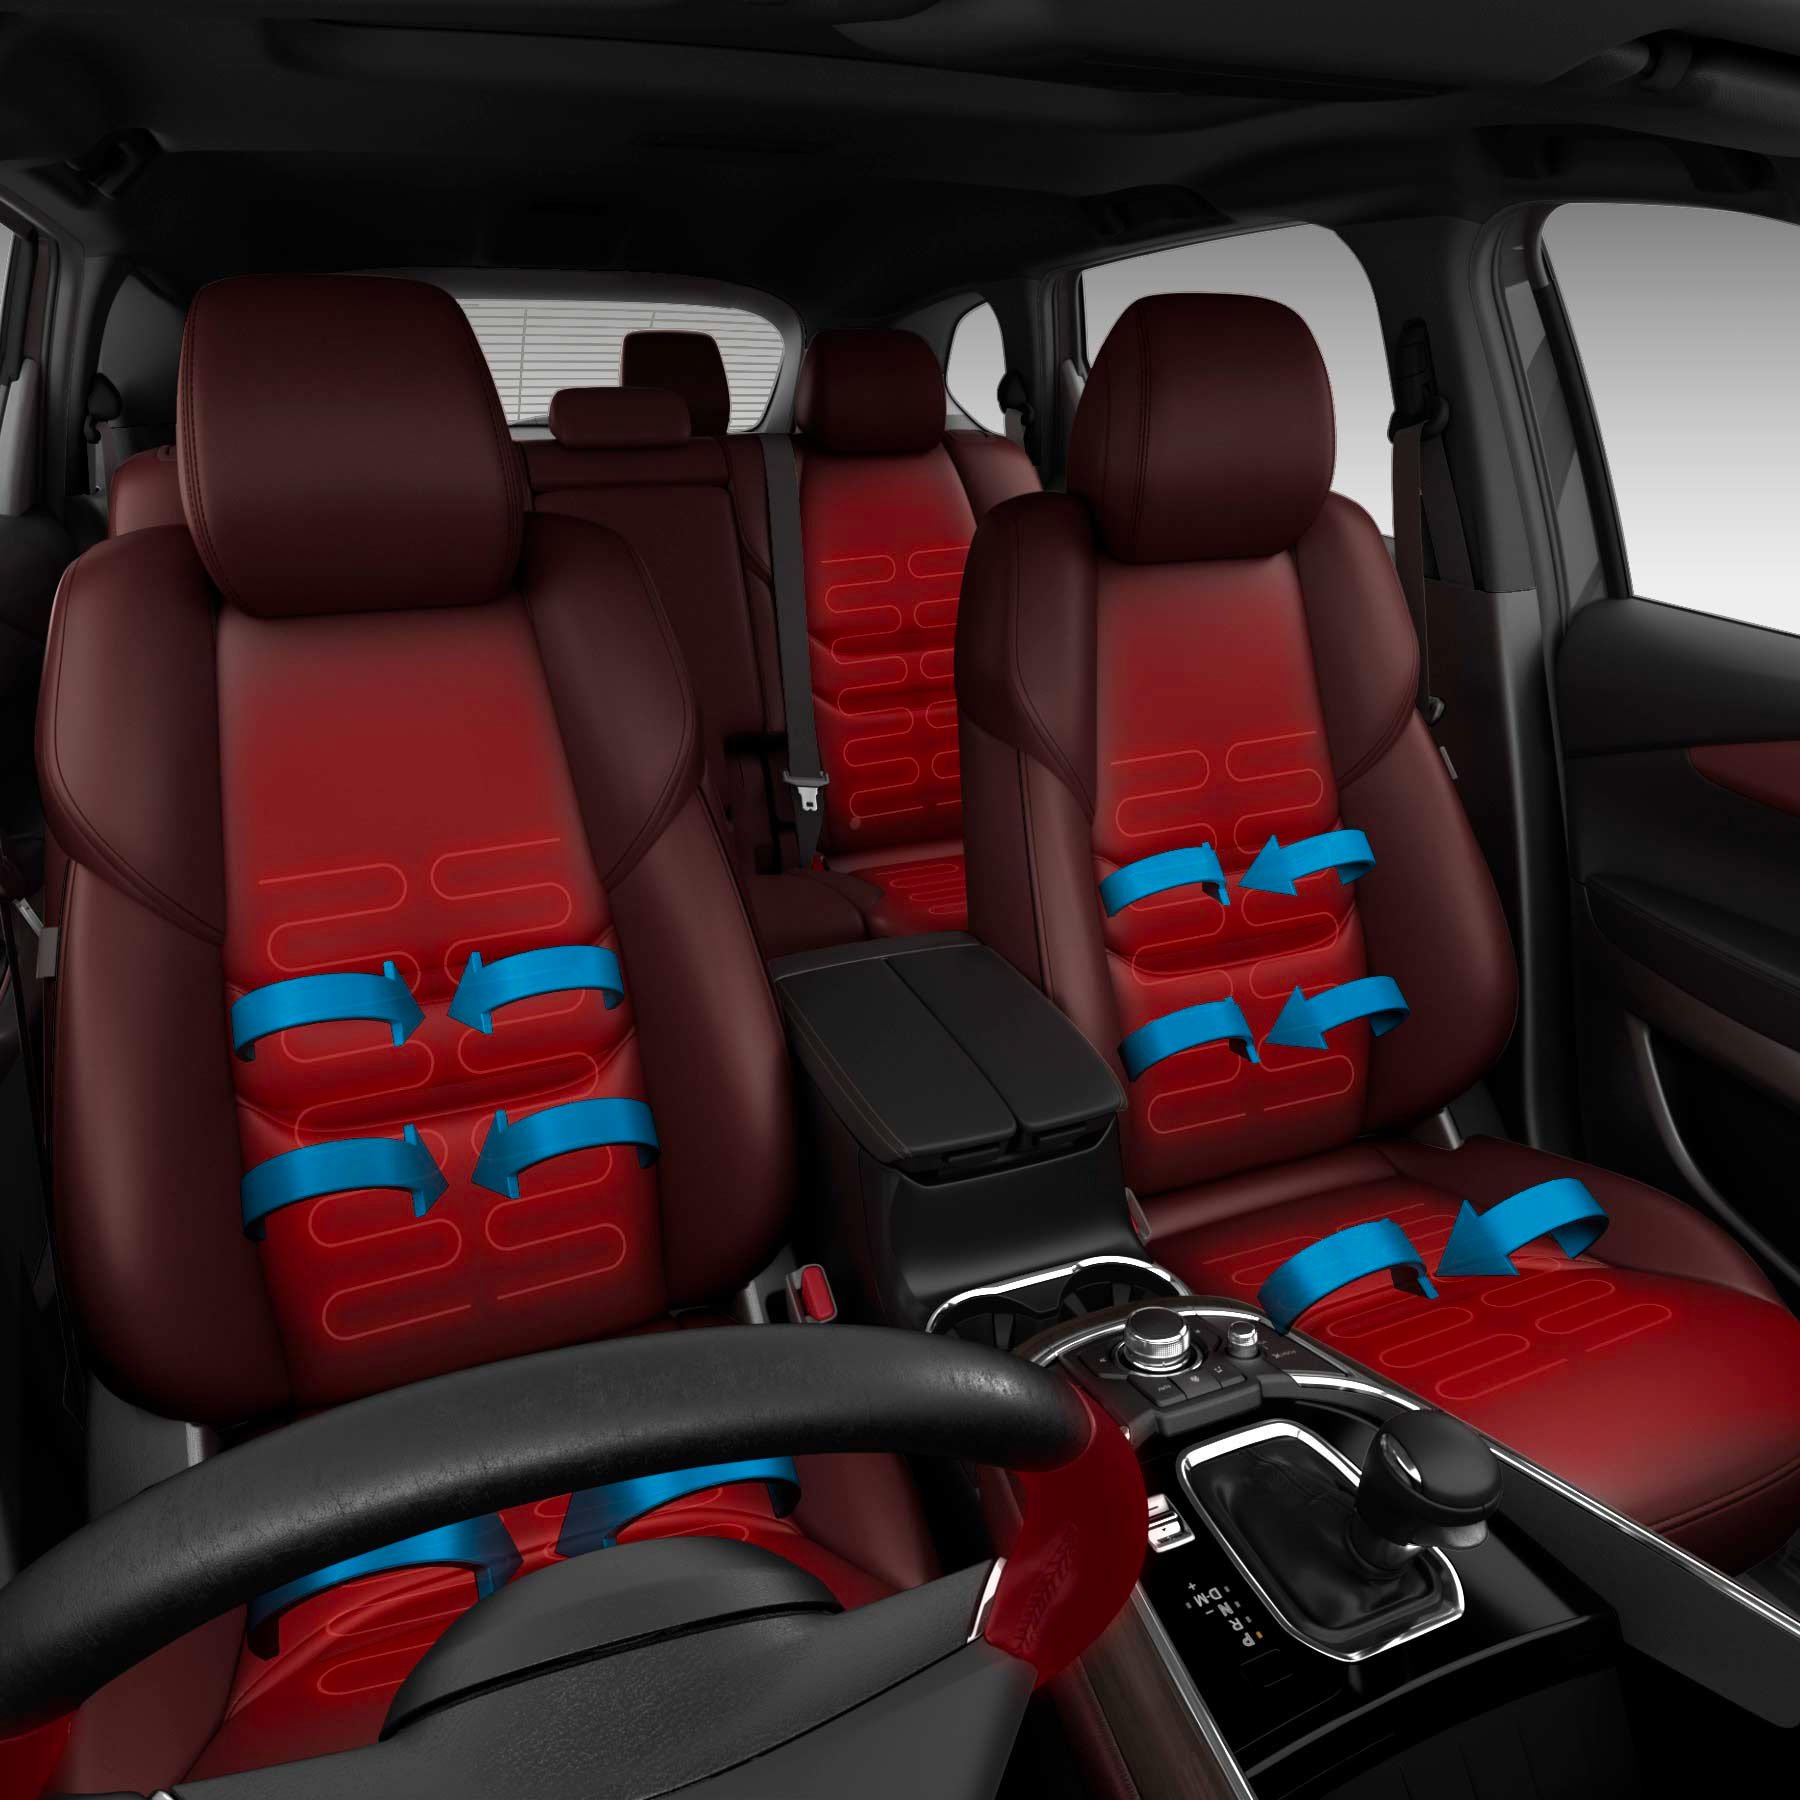 Heated & Ventilated Seats & Heated Steering Wheel